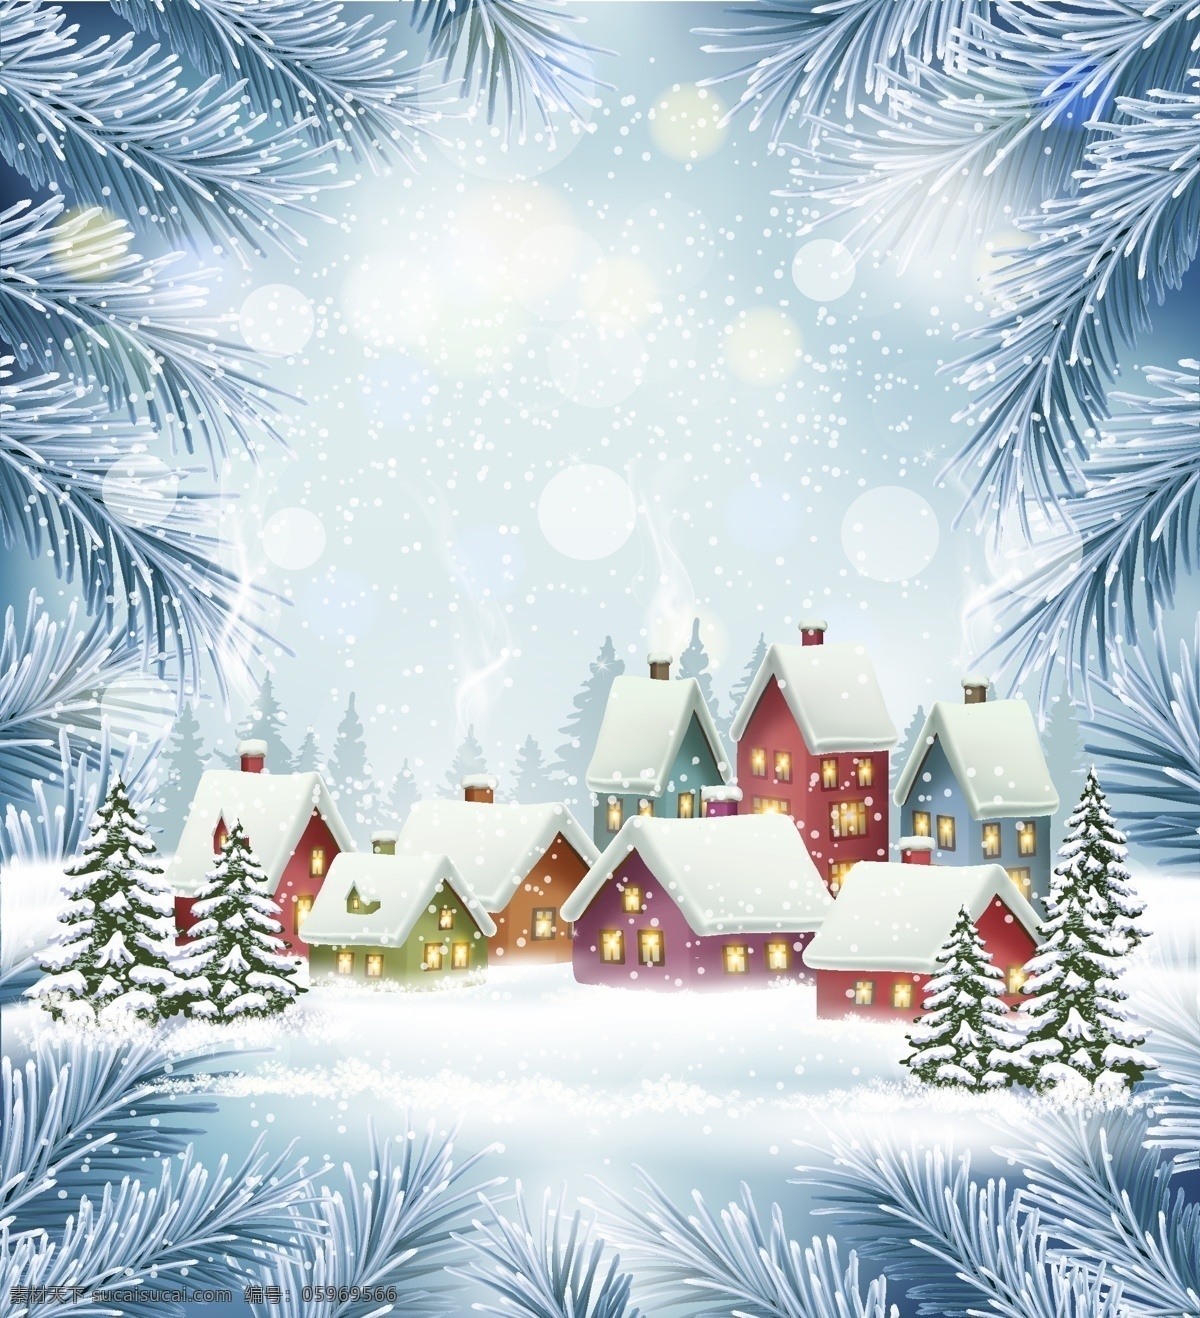 美丽 圣诞节 风景 插画 冬天 下雪 雪花 房子 节日